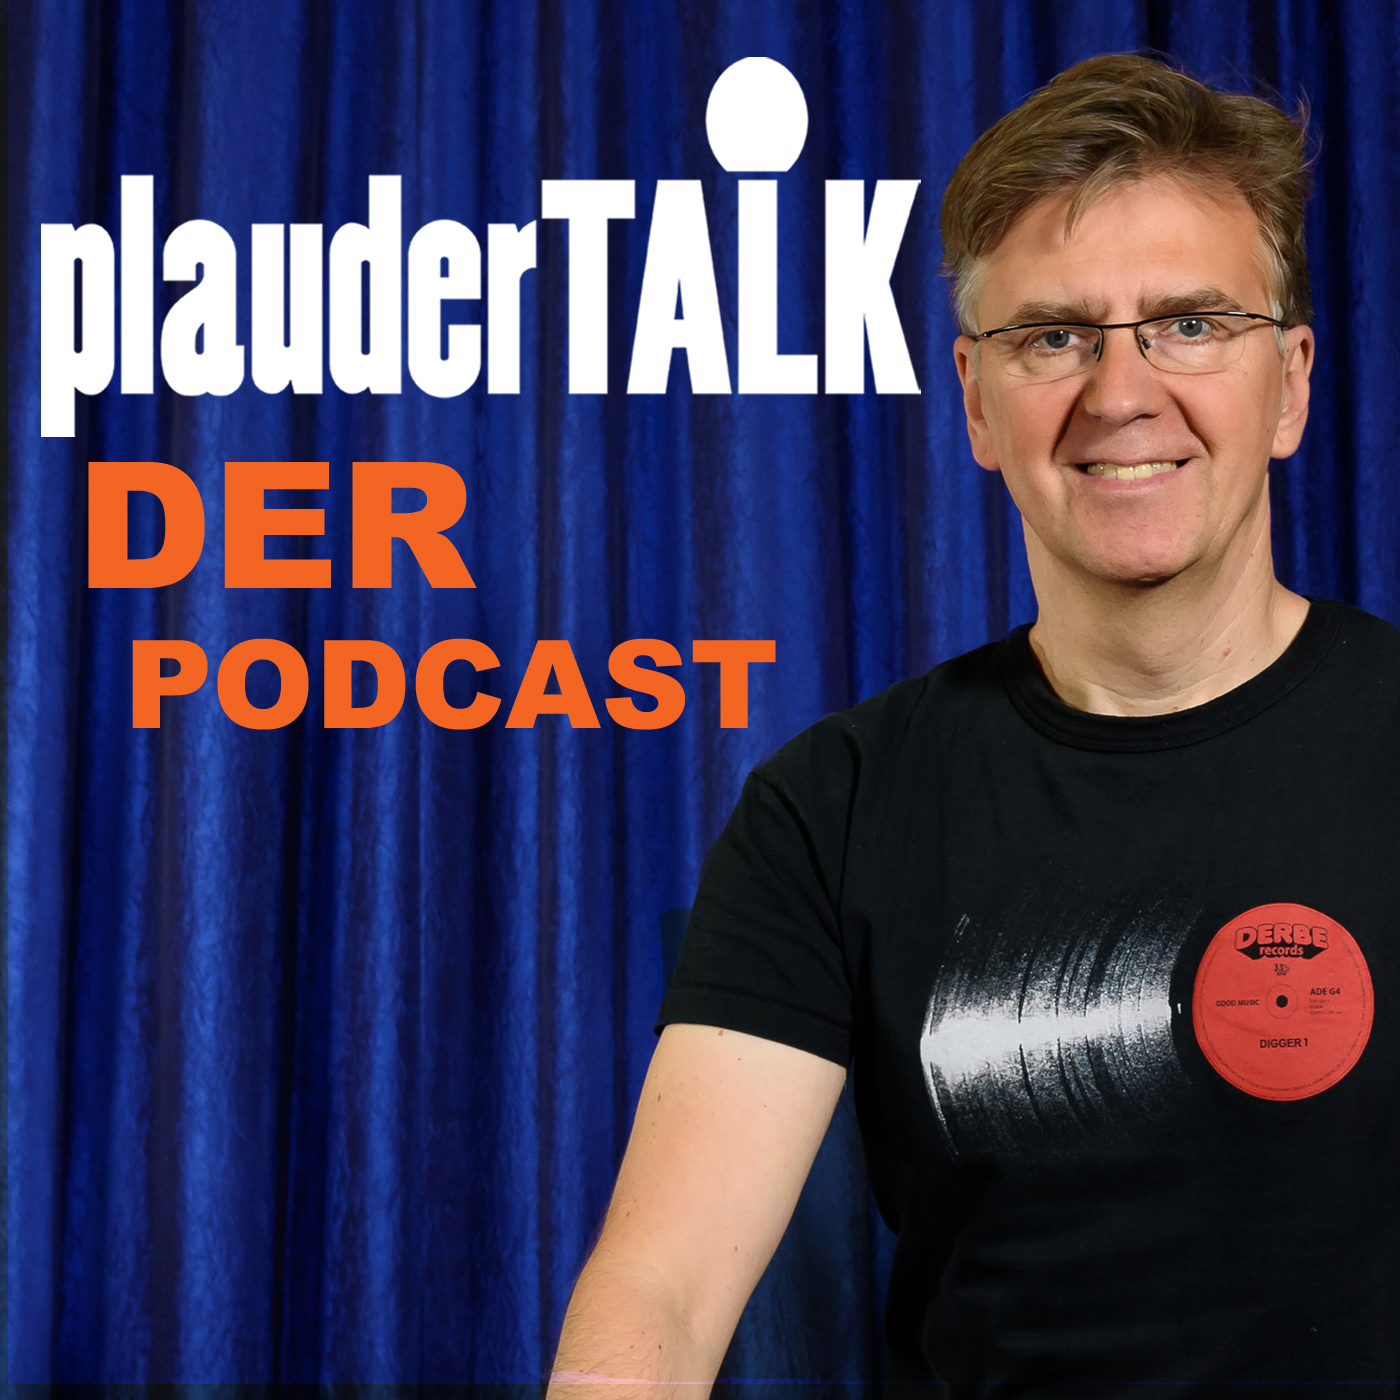 Plaudertalk Podcast mit Thorsten Martens